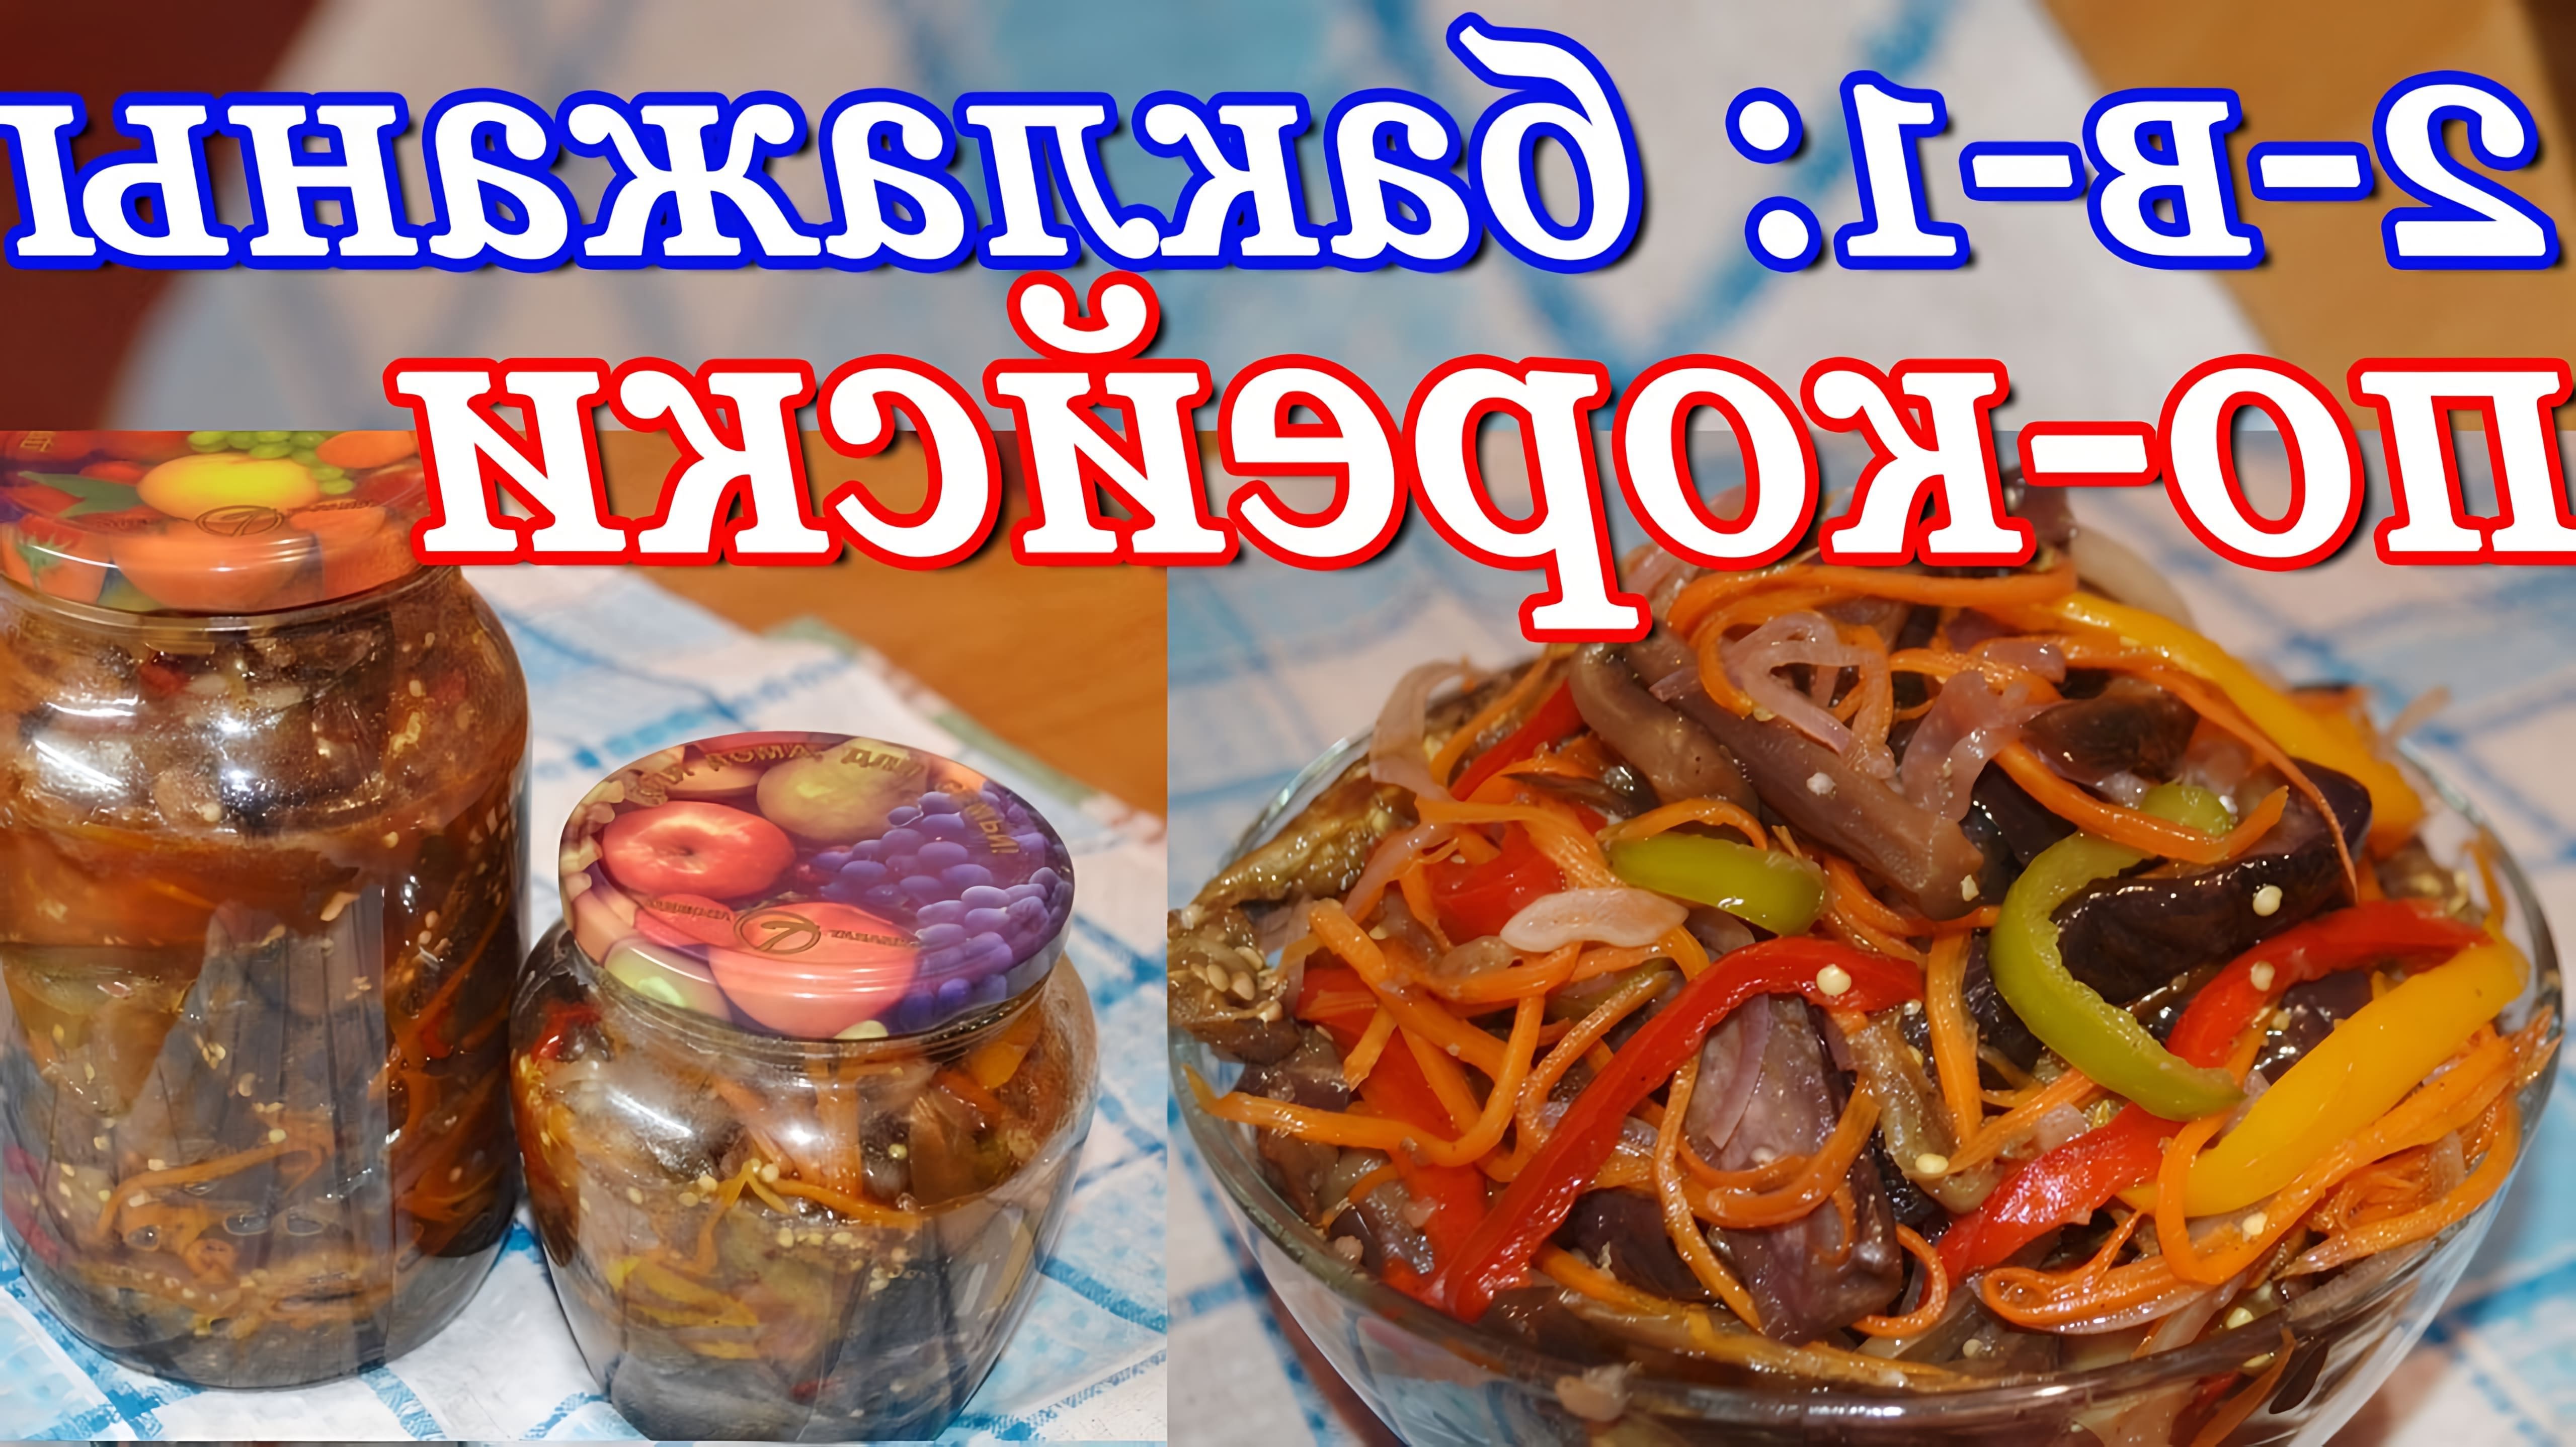 В этом видео демонстрируется два рецепта маринованных баклажан: по-корейски на зиму и как закуска - быстрые маринованные баклажаны